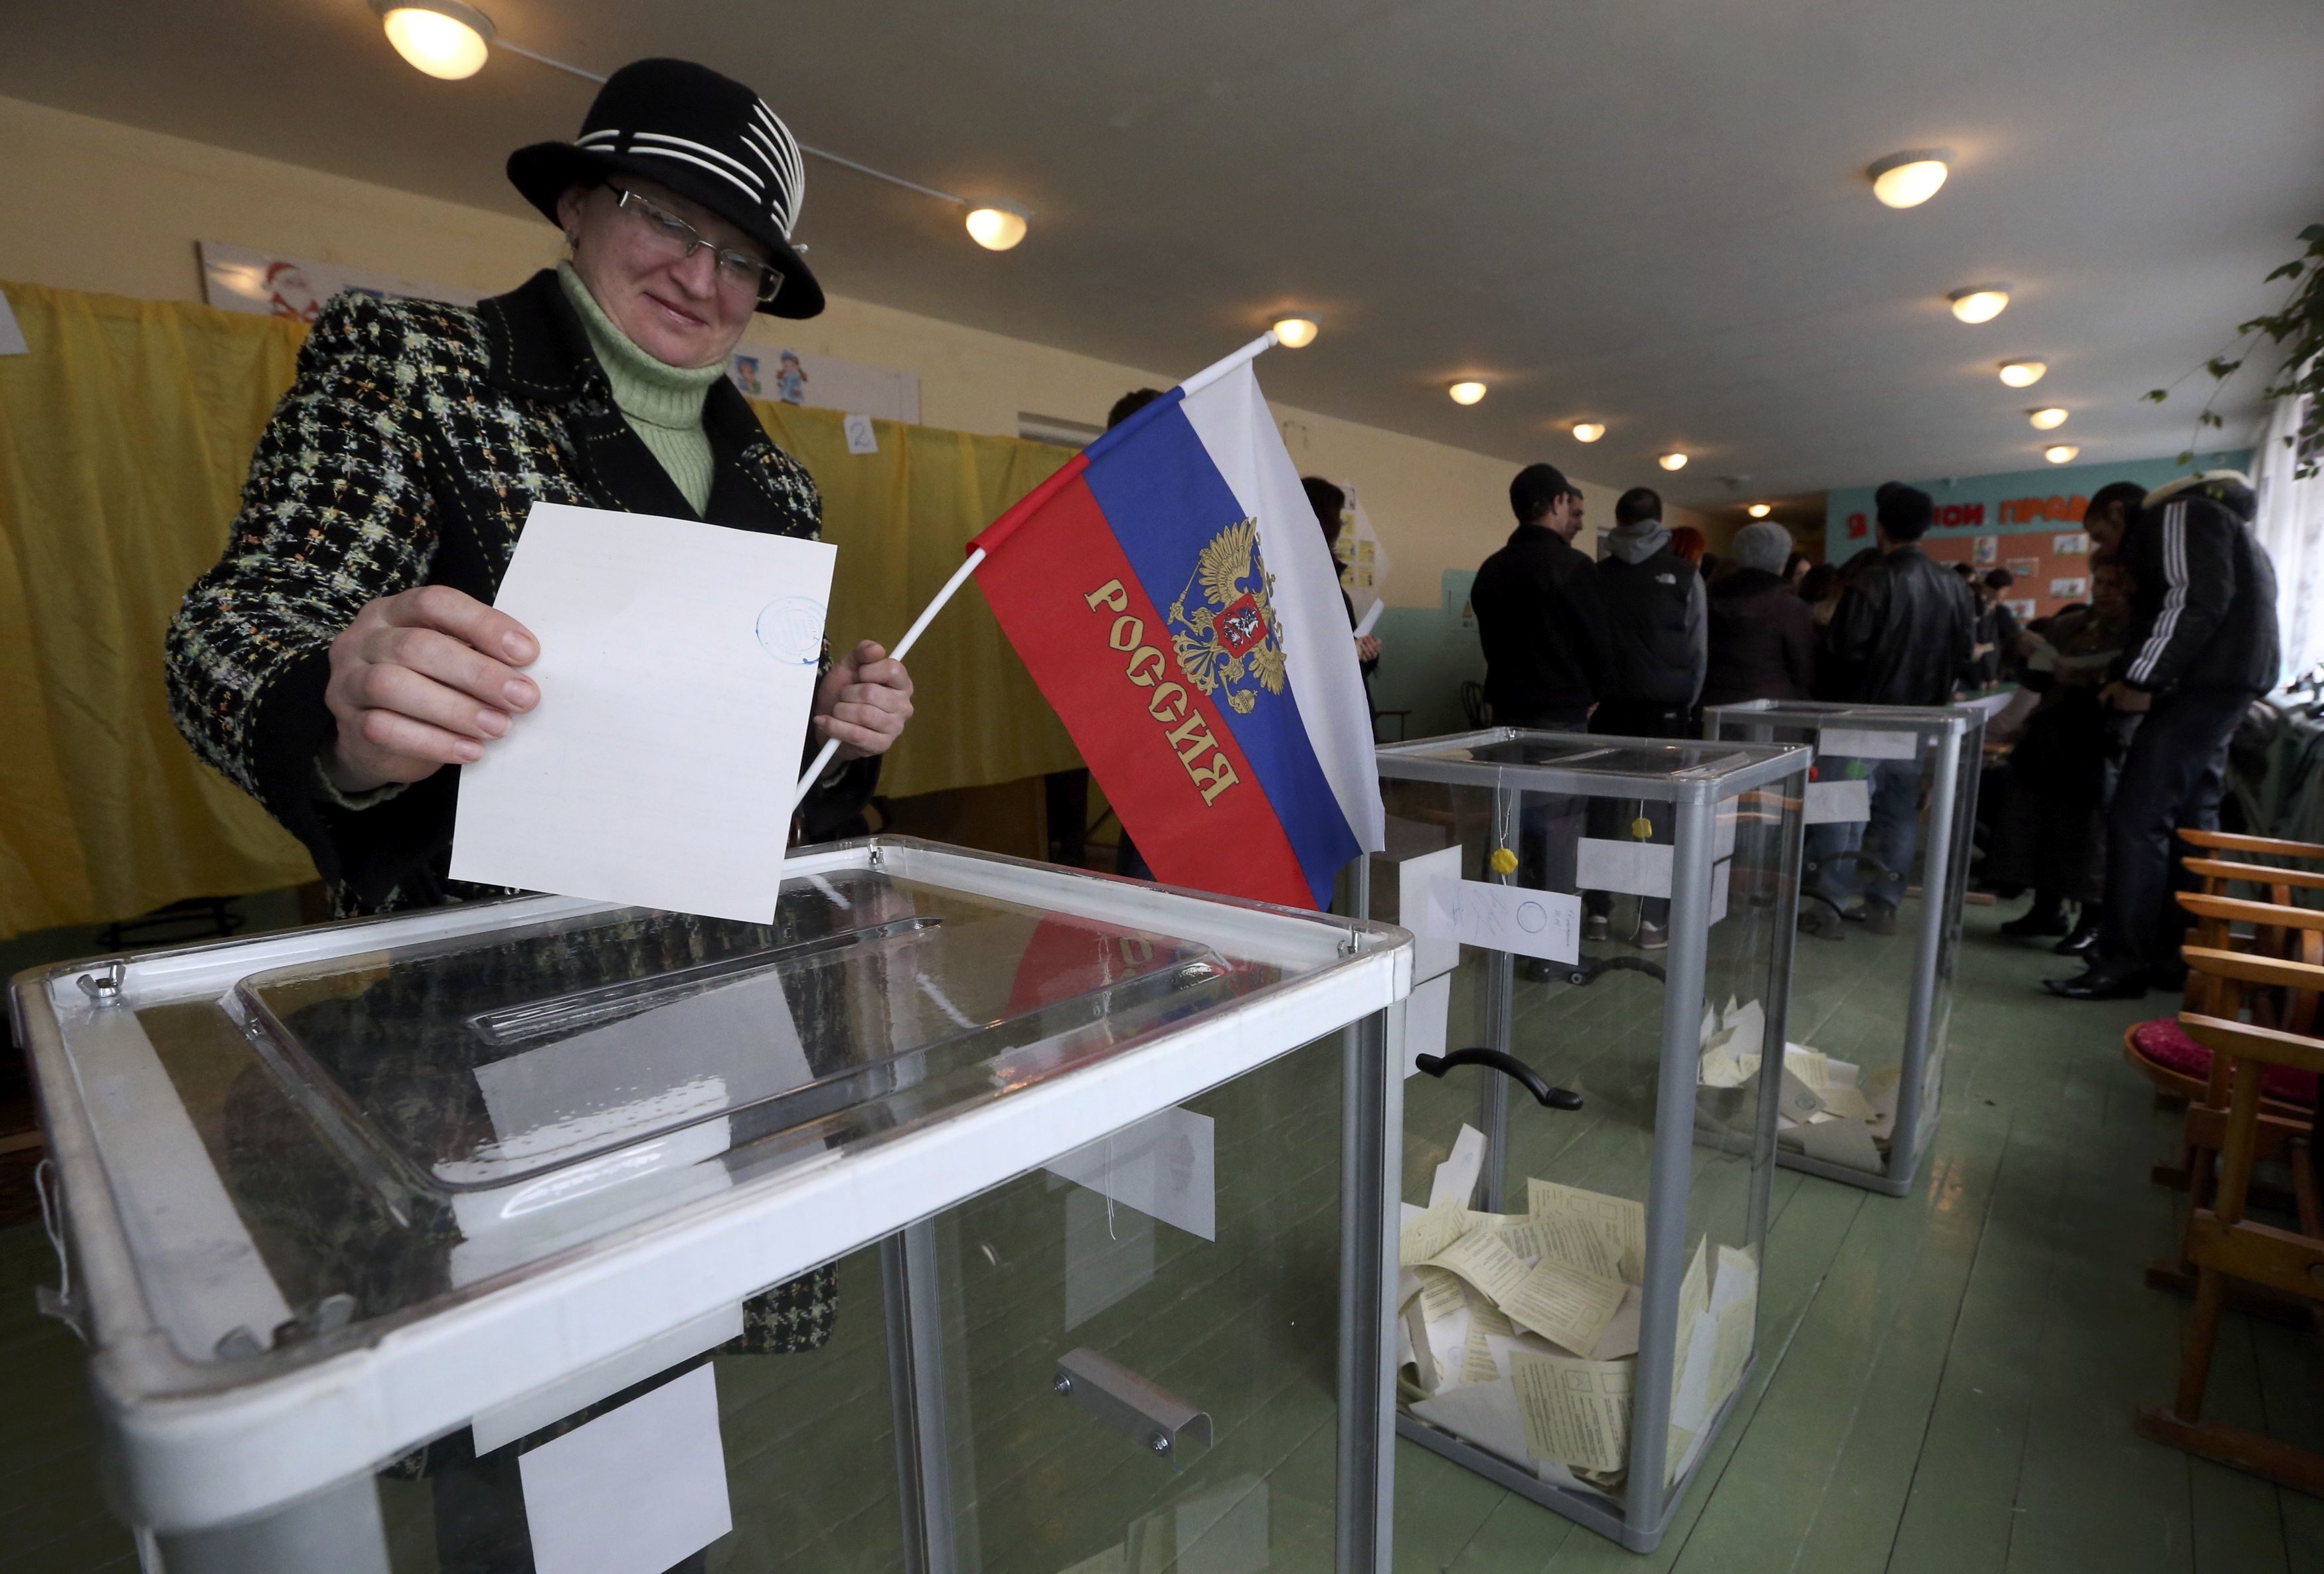 Παράνομο το δημοψήφισμα στην Κριμαία, σύμφωνα με το Συμβούλιο της Ευρώπης